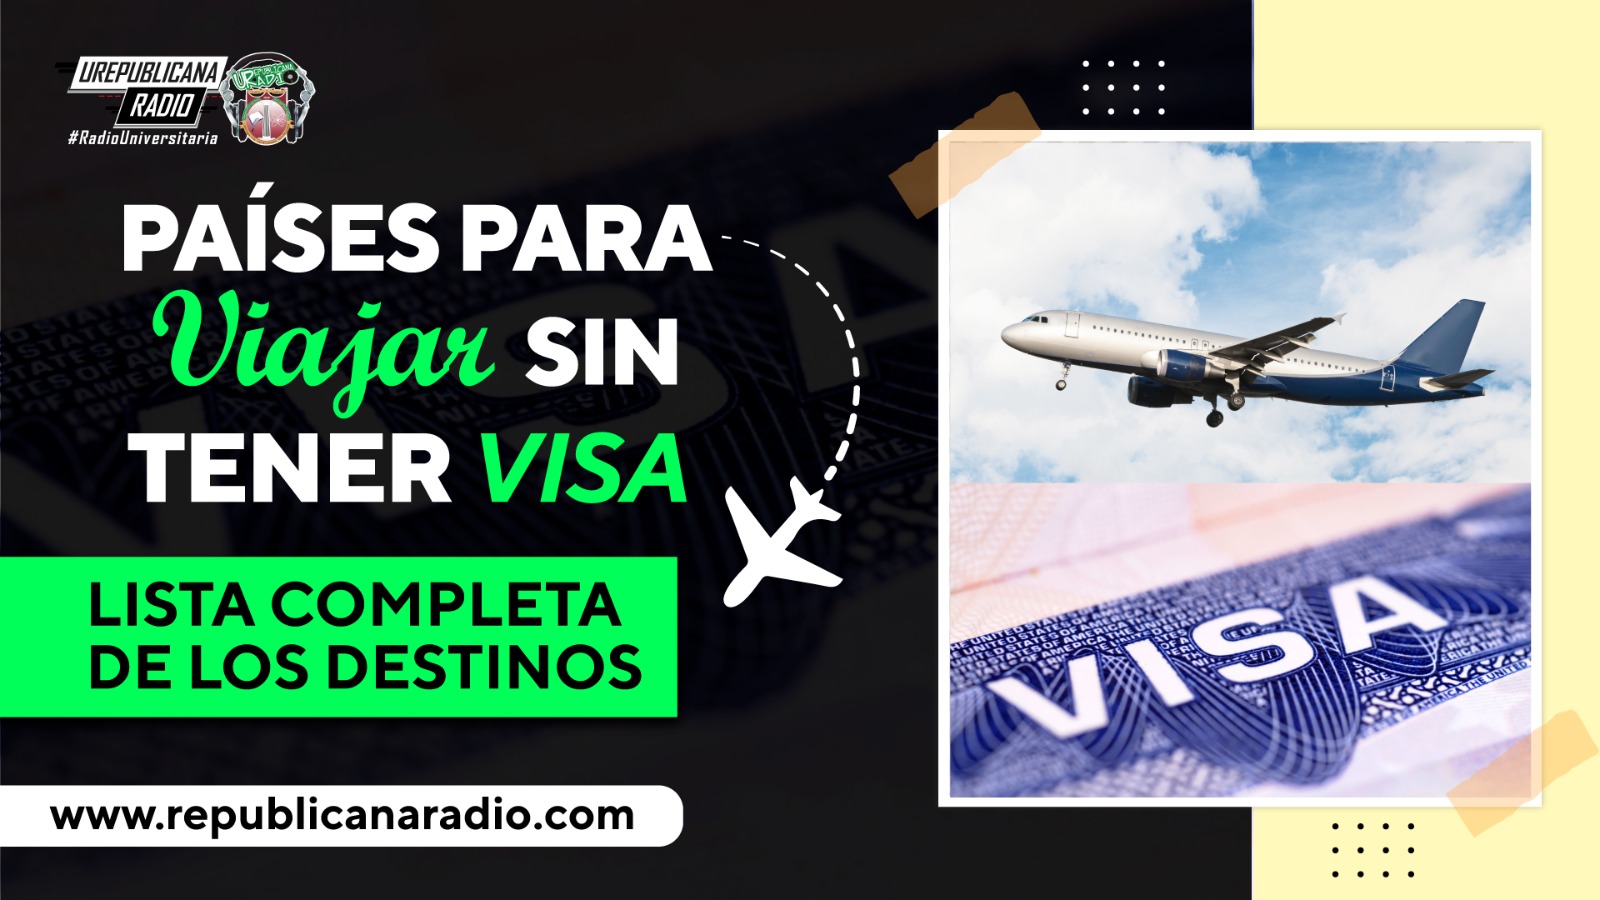 Paises para viajar sin tener visa, lista completa de destinos